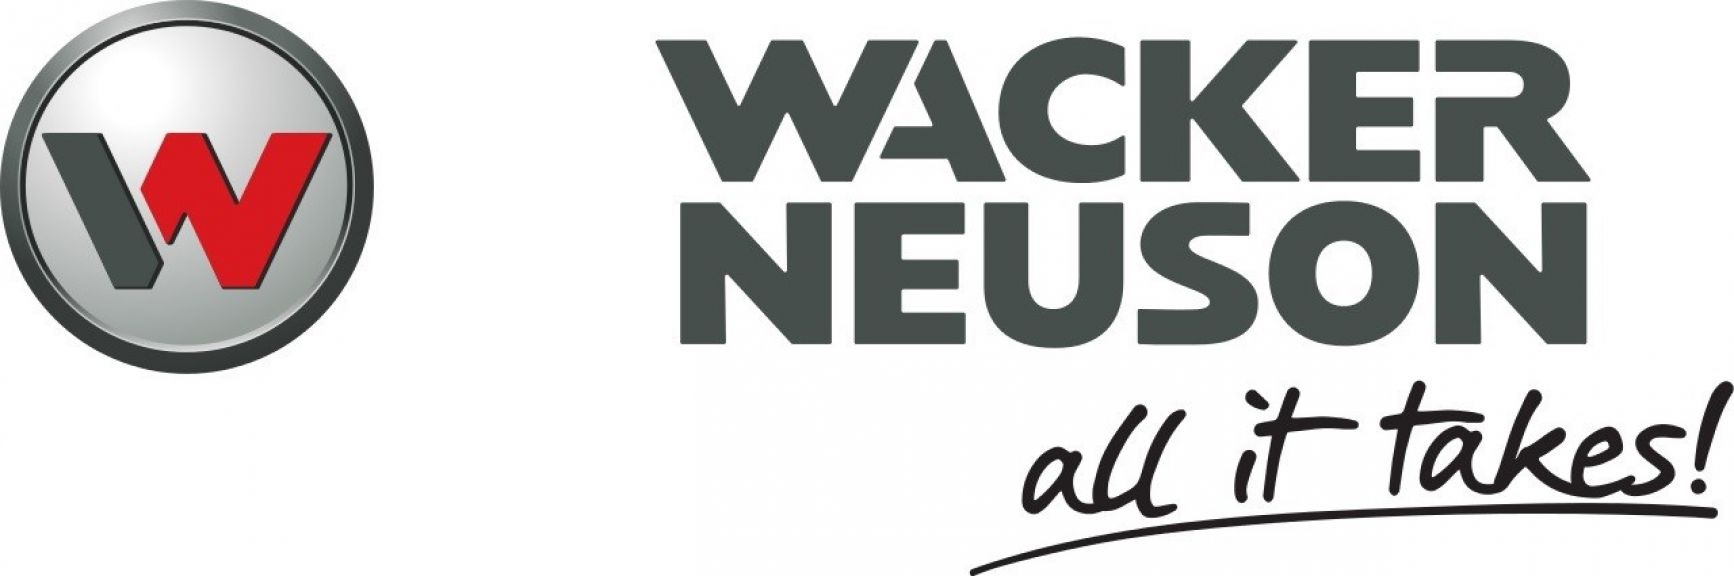 Nemačka kompanija Wacker Neuson otvorila drugi pogon u Kragujevcu - Investicija vrijedna 25 mil EUR